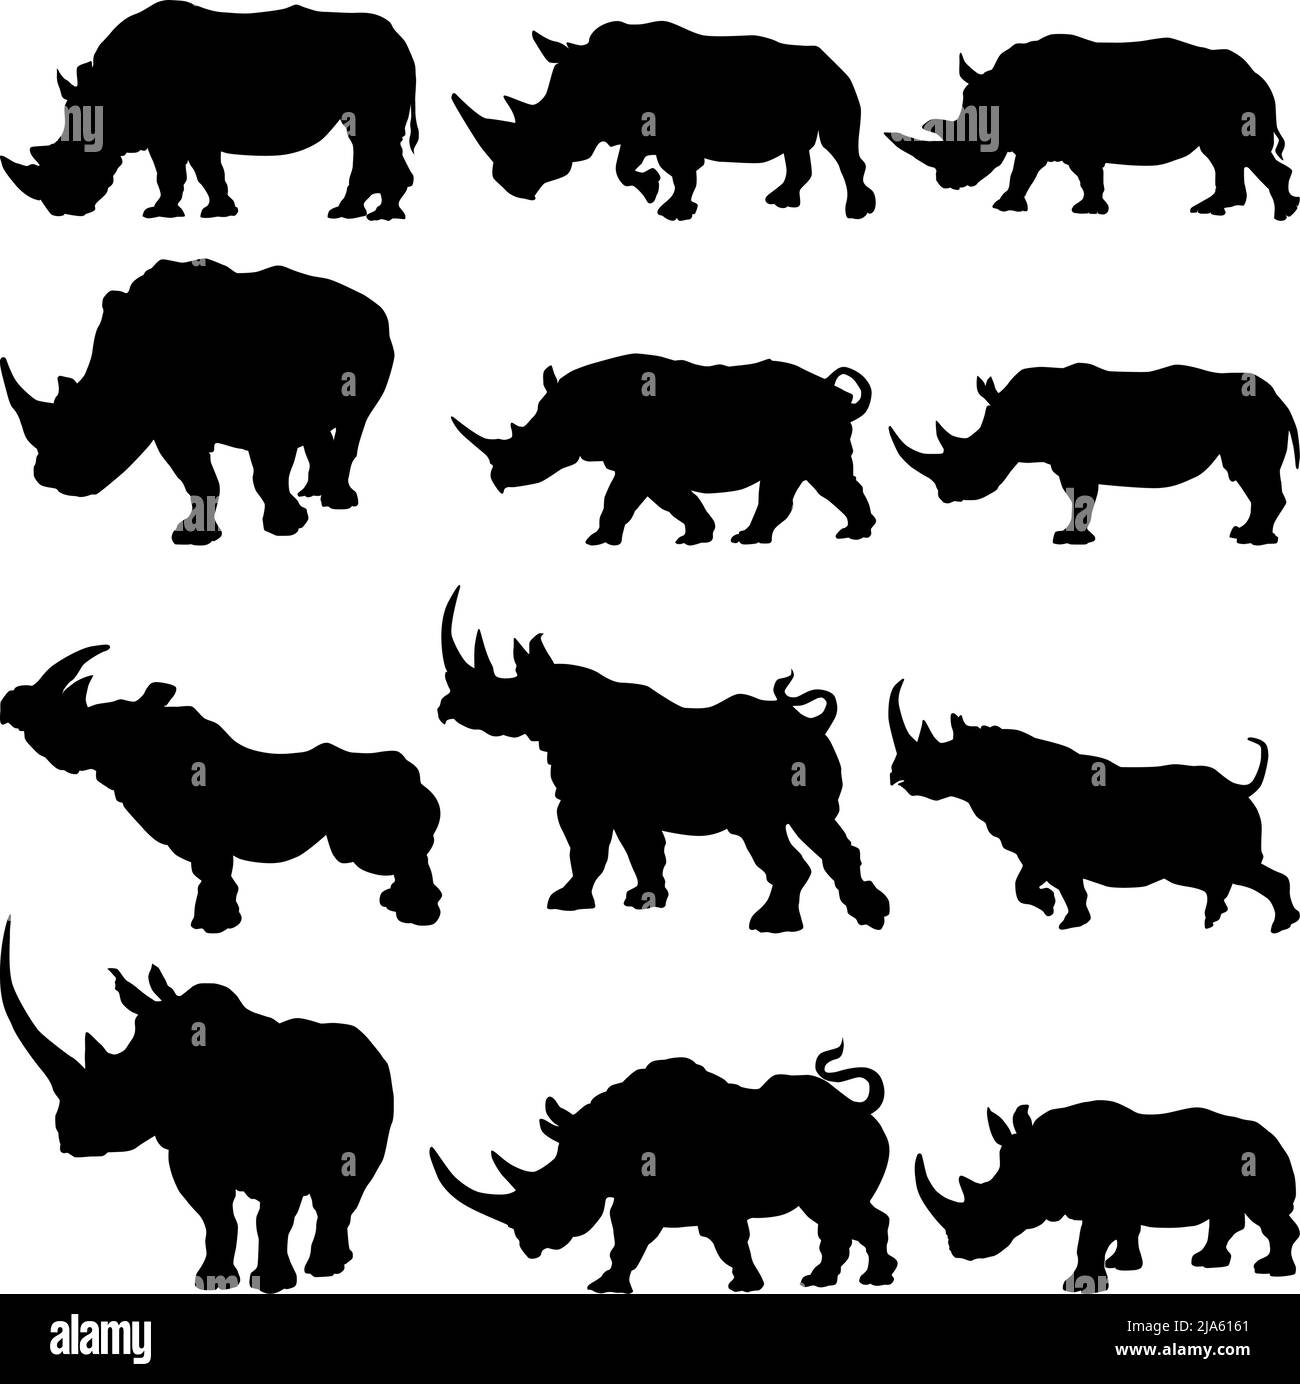 Ensemble de la silhouette de rhinocéros dans différentes poses dessin animé animal dessin plat illustration vectorielle isolée sur fond blanc Illustration de Vecteur